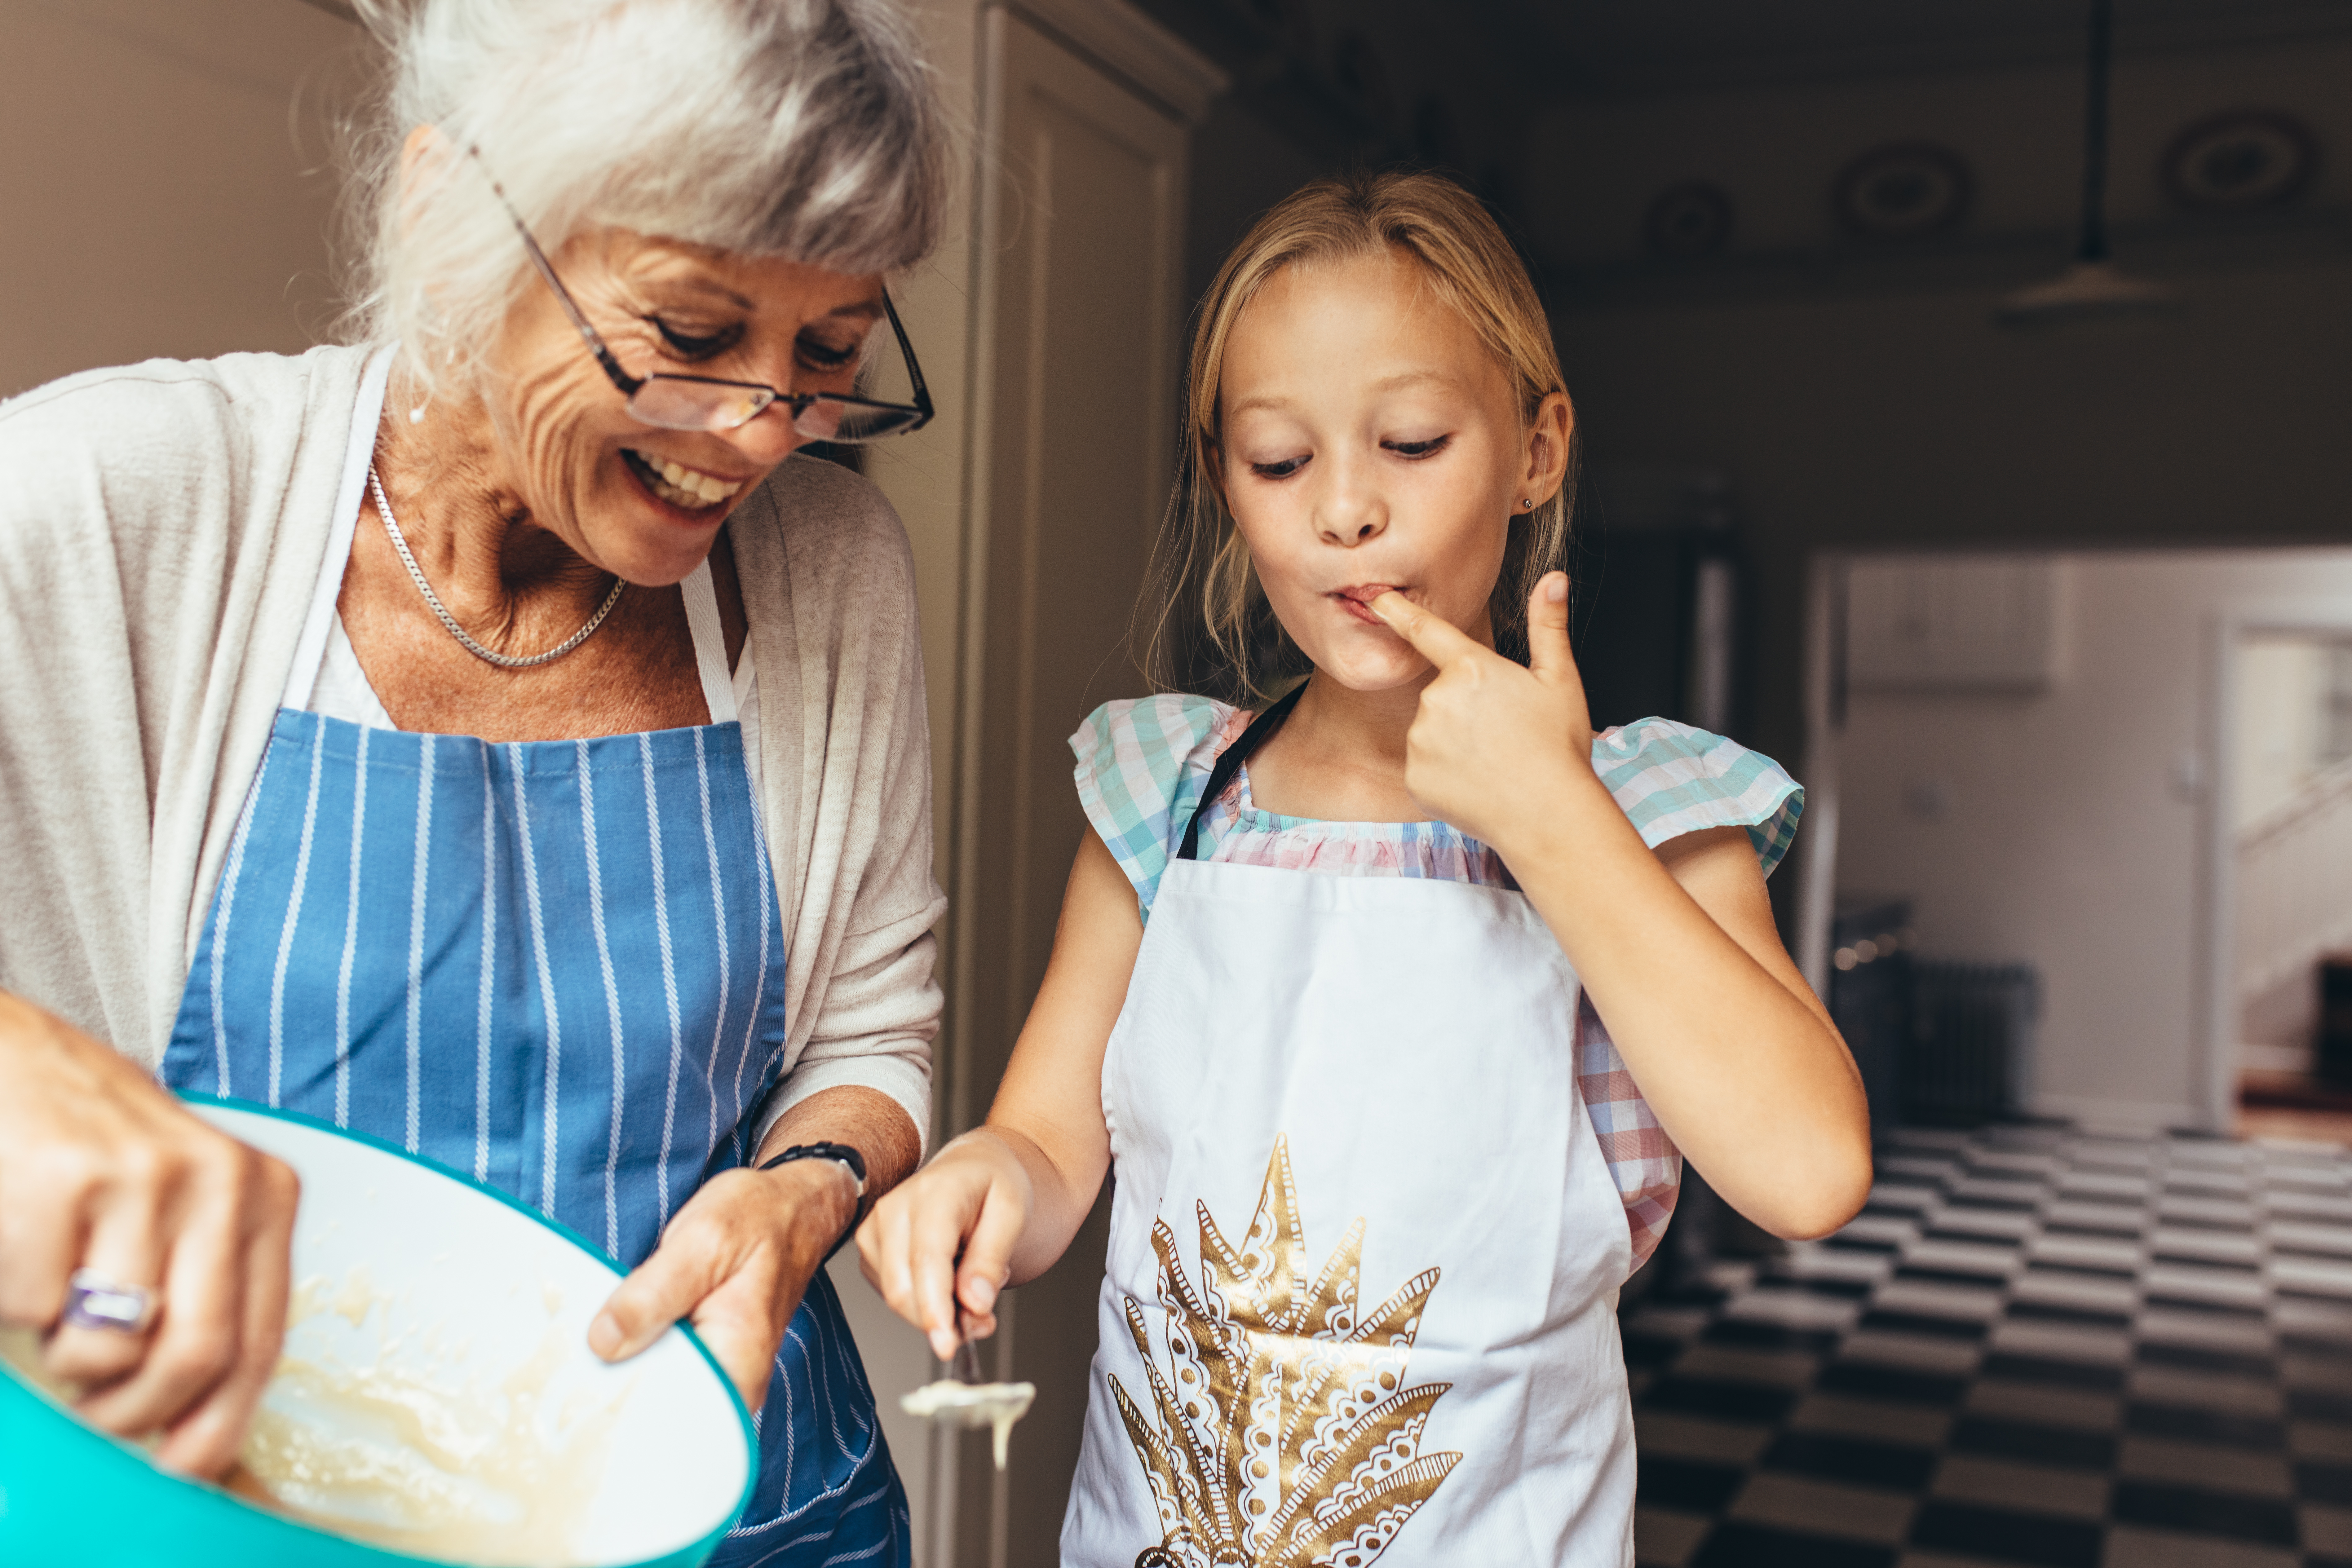 Une petite fille et sa grand-mère font de la pâtisserie | Source : Shutterstock